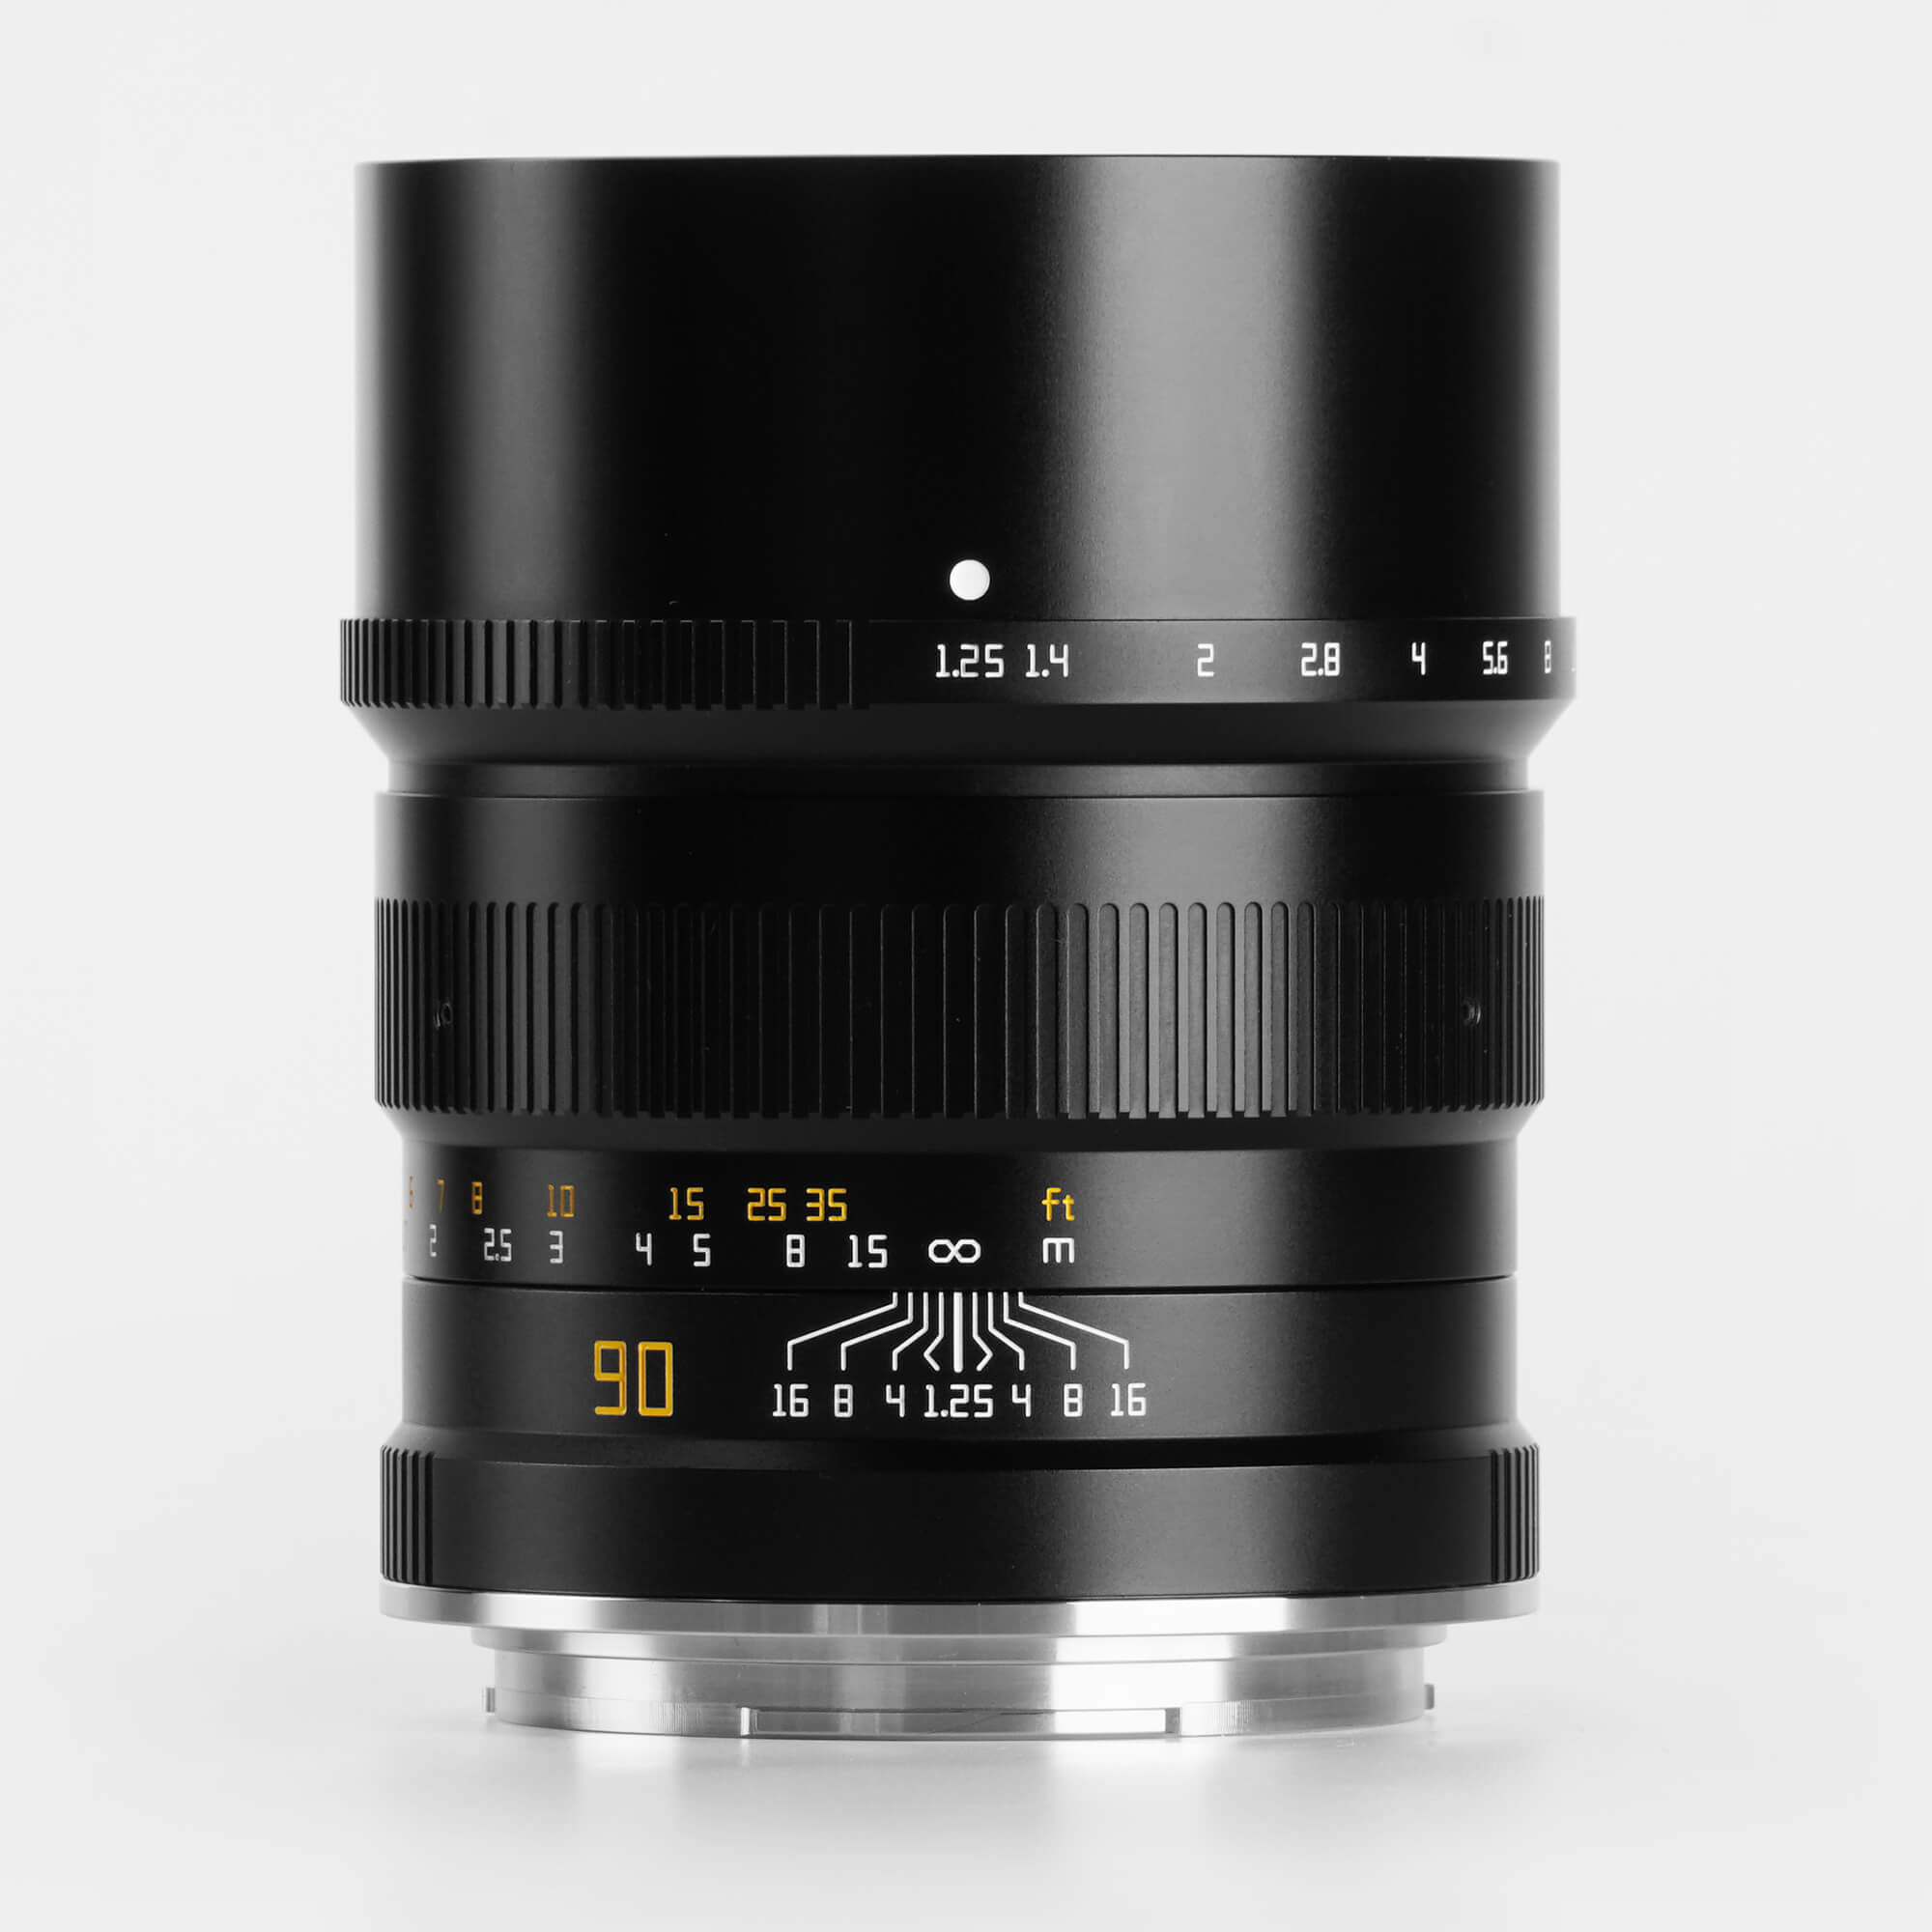 90mm f/1.25 objektiv för Leica L